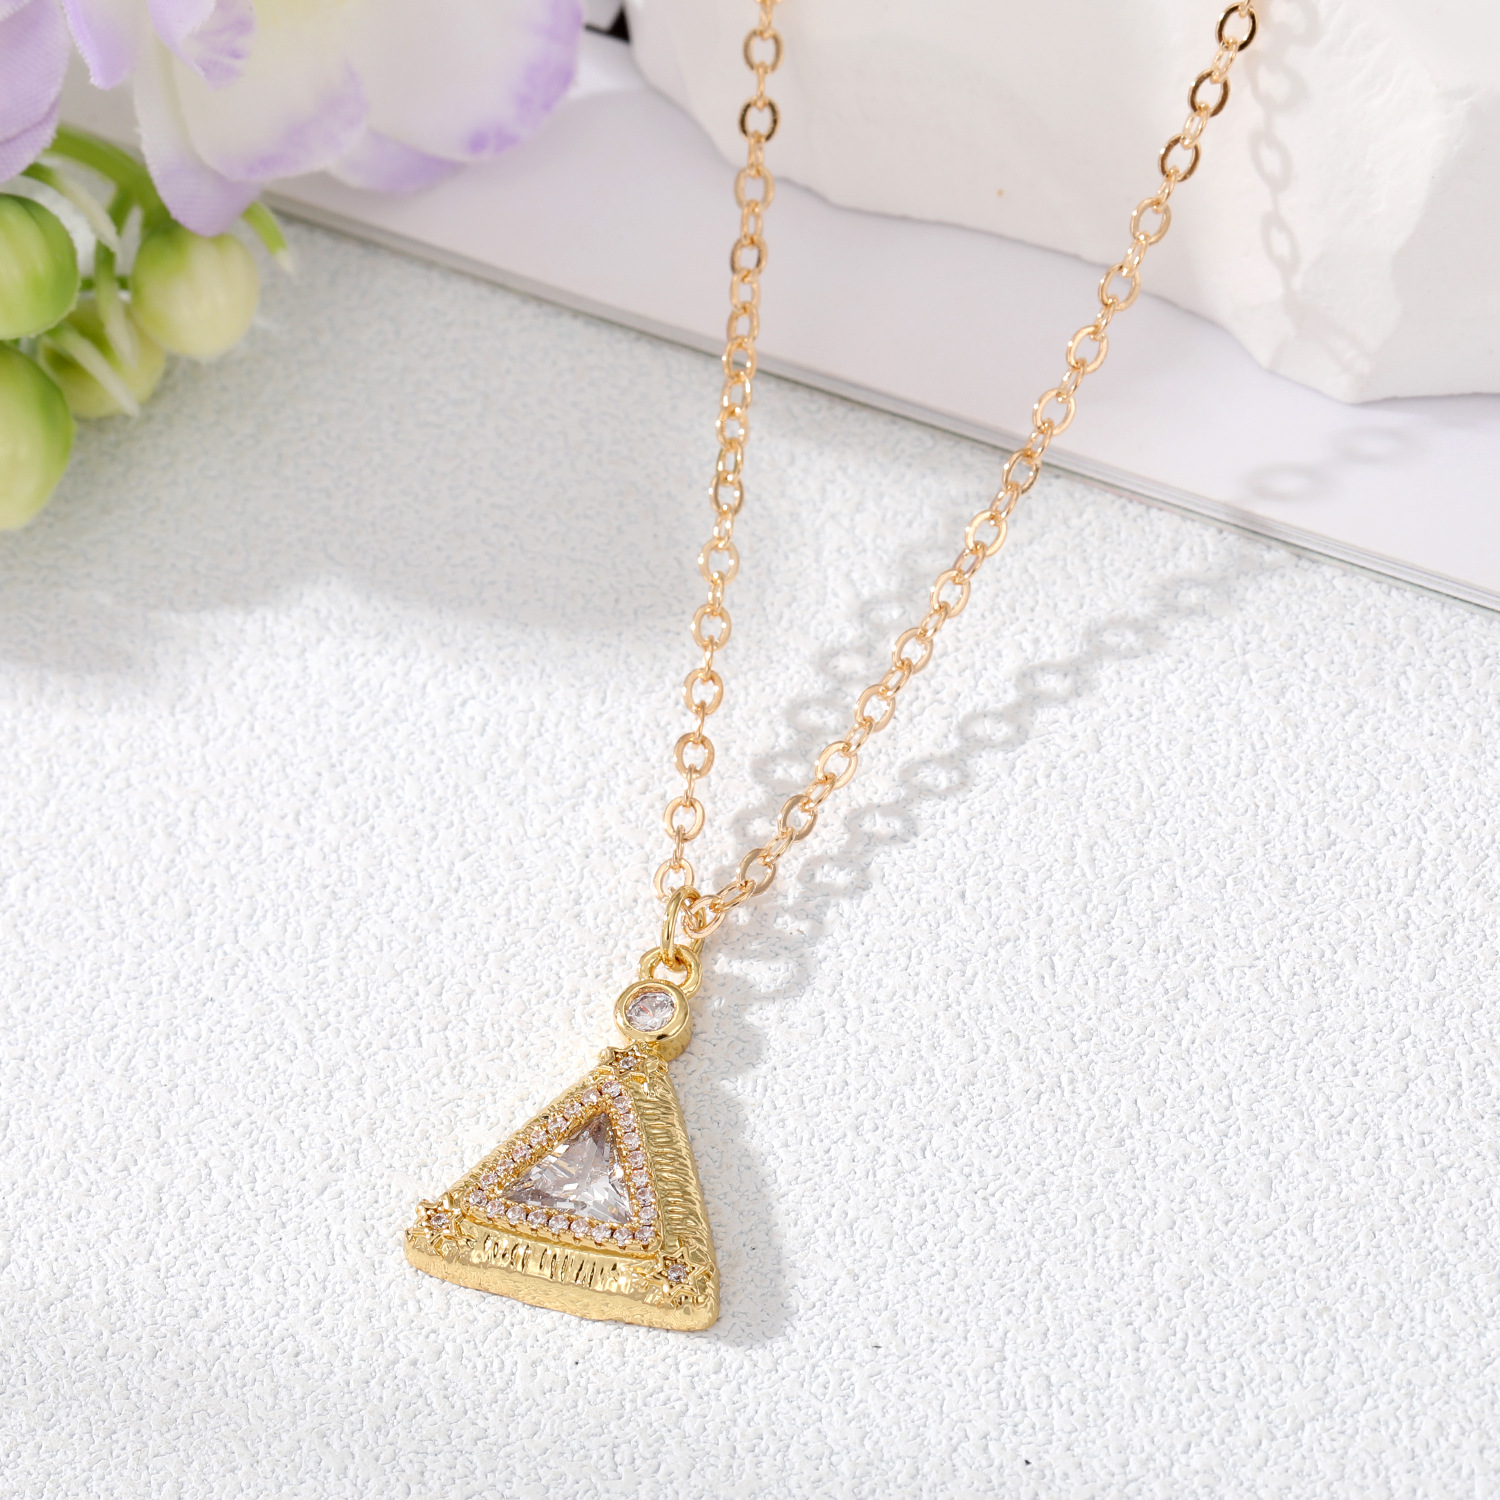 1:White diamond triangle